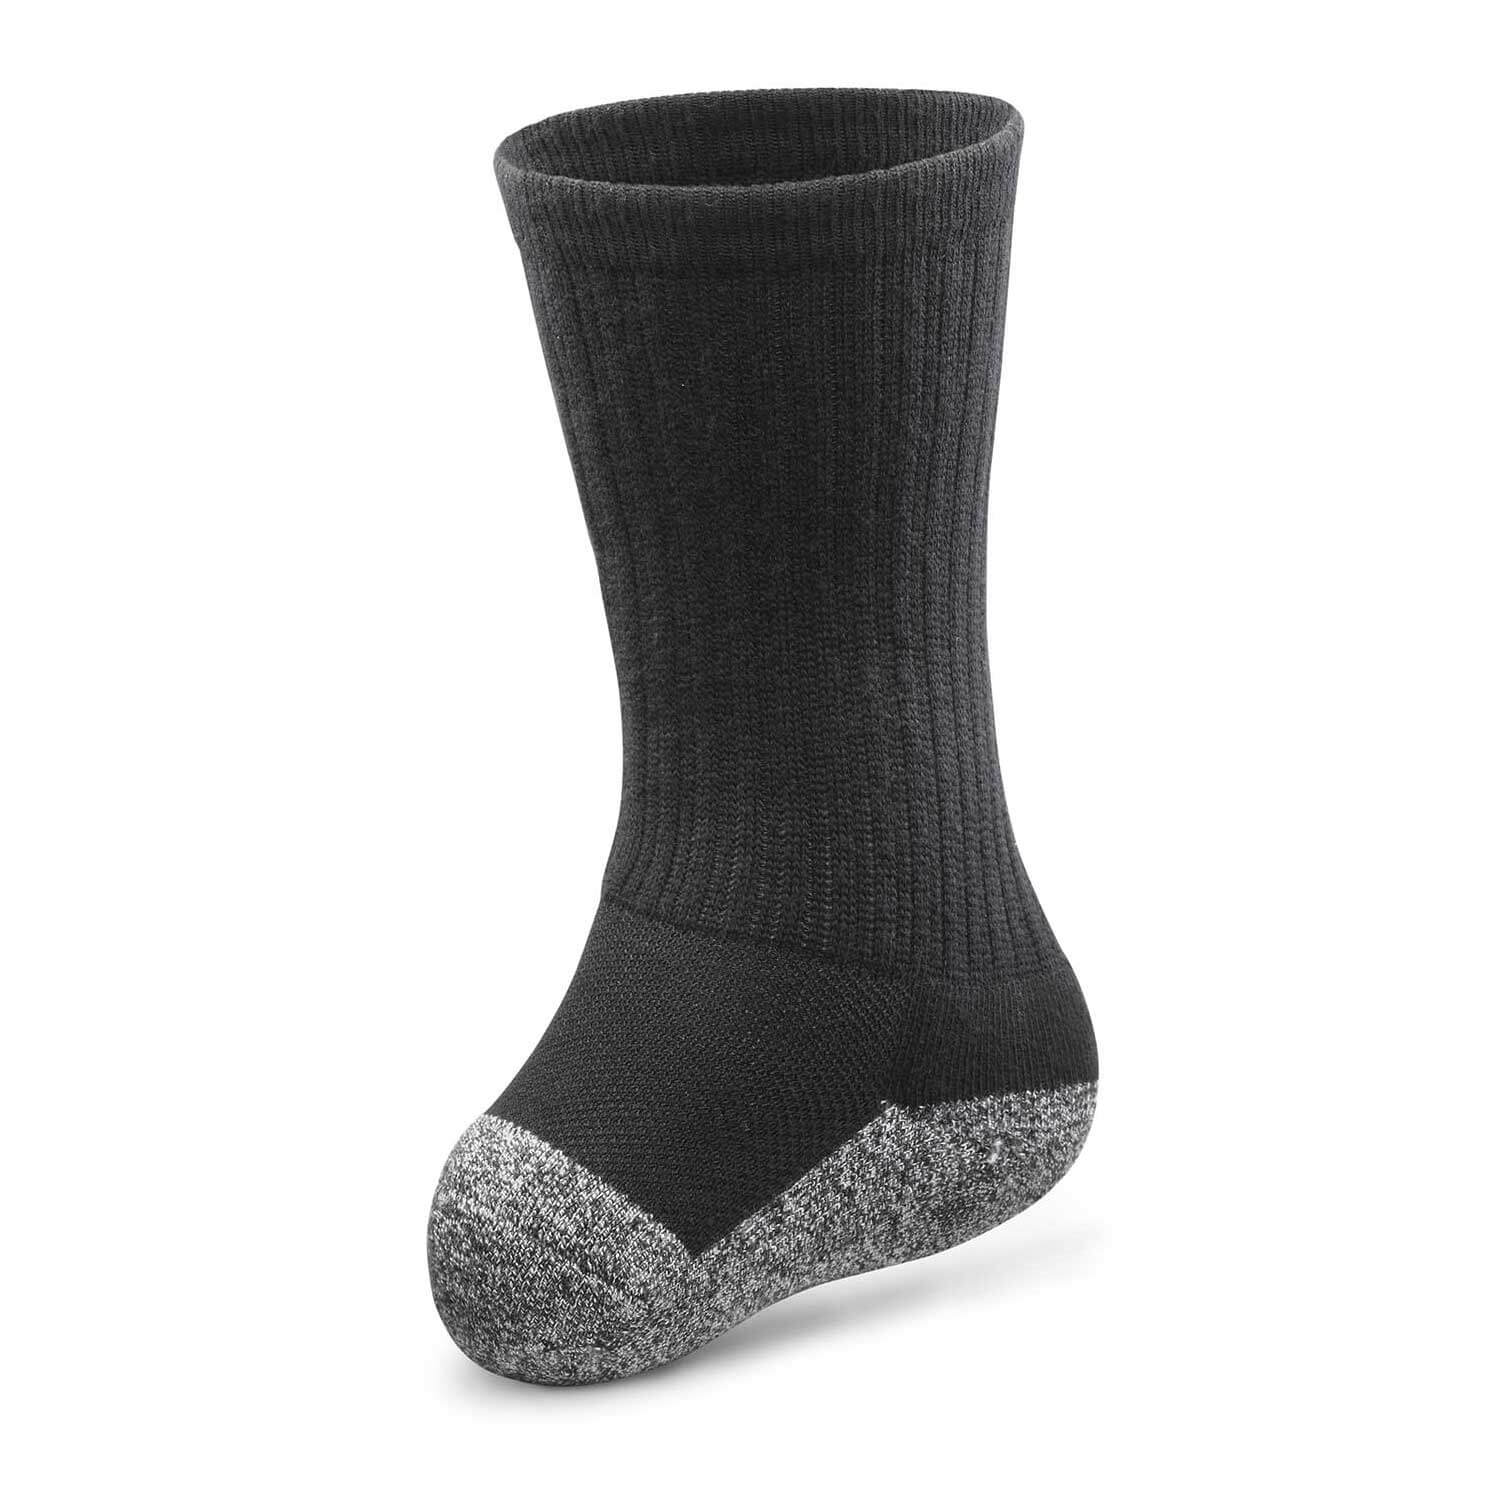 Dr. Comfort Transmet Socks (1 Pair) - Men's Therapeutic Diabetic Socks - Medical